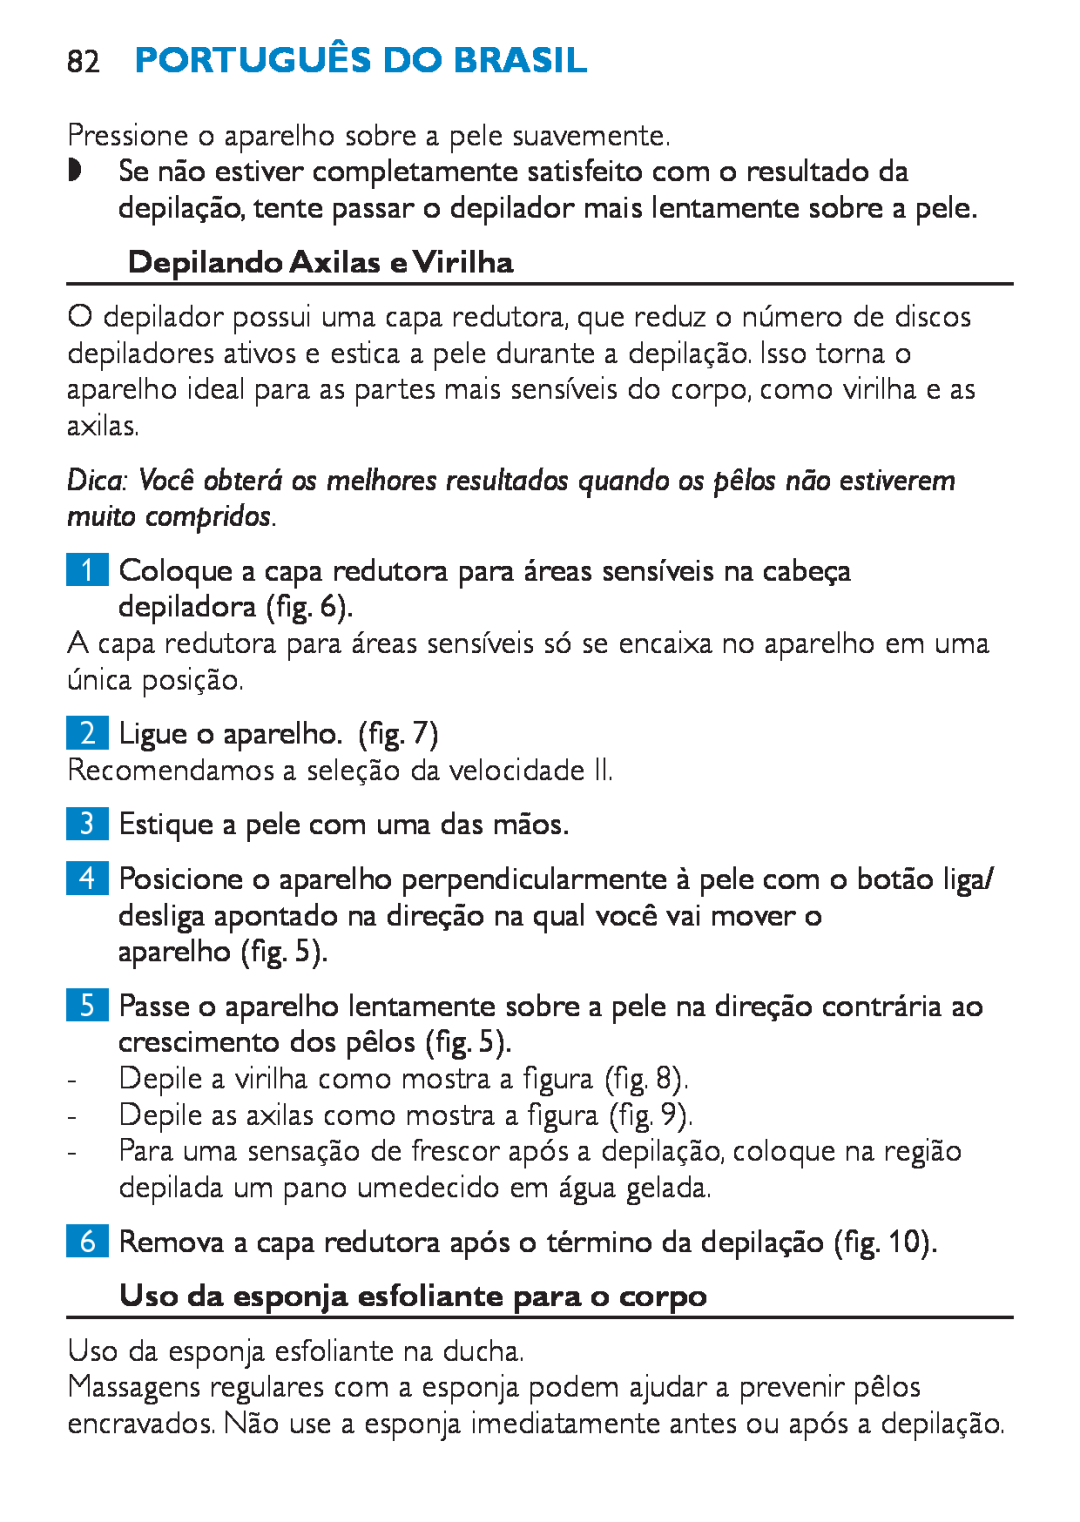 Philips HP6490 manual 82Português do Brasil, Depilando Axilas e Virilha, Uso da esponja esfoliante para o corpo 